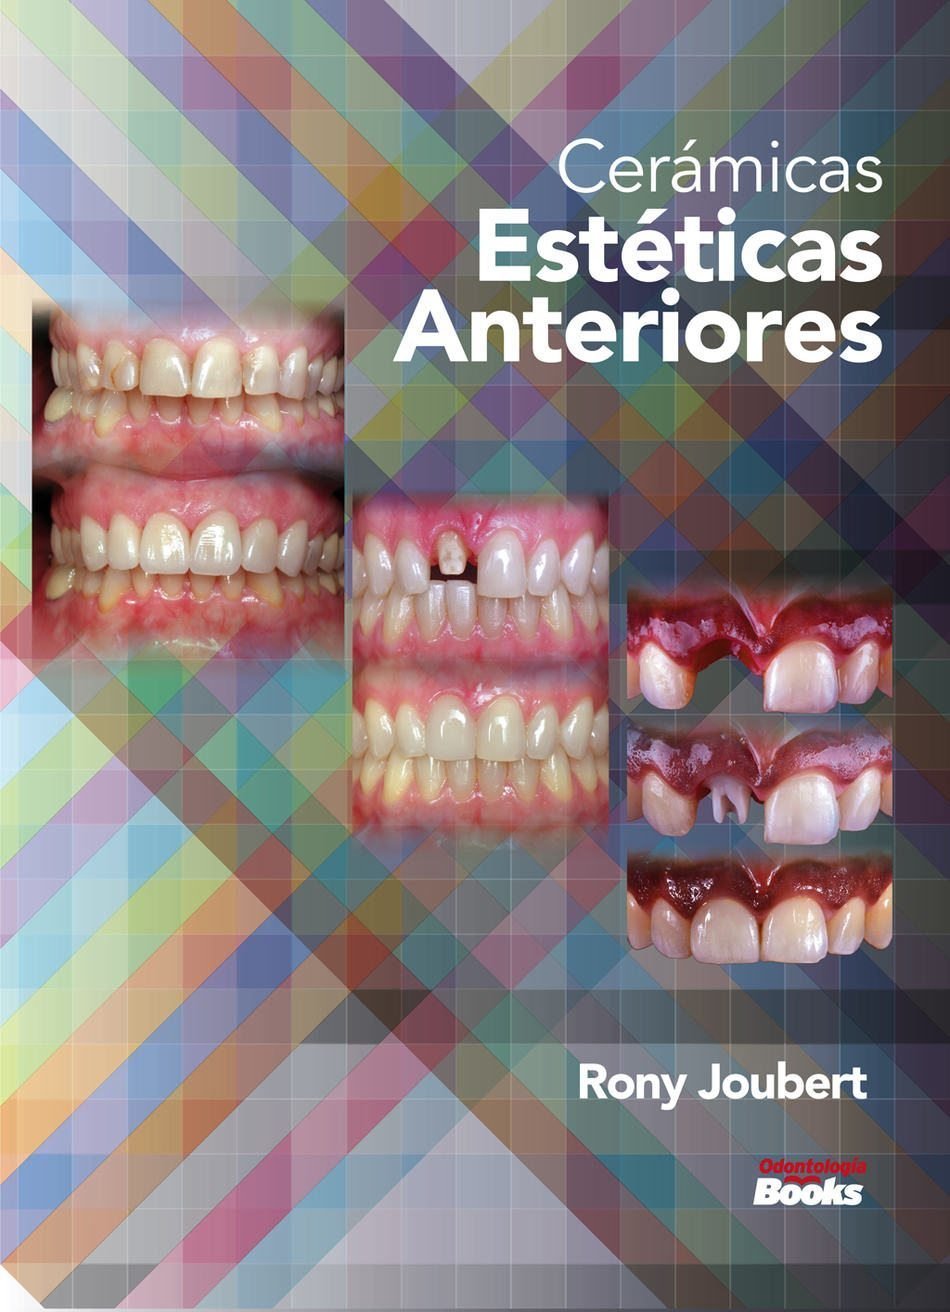 Odontología Books